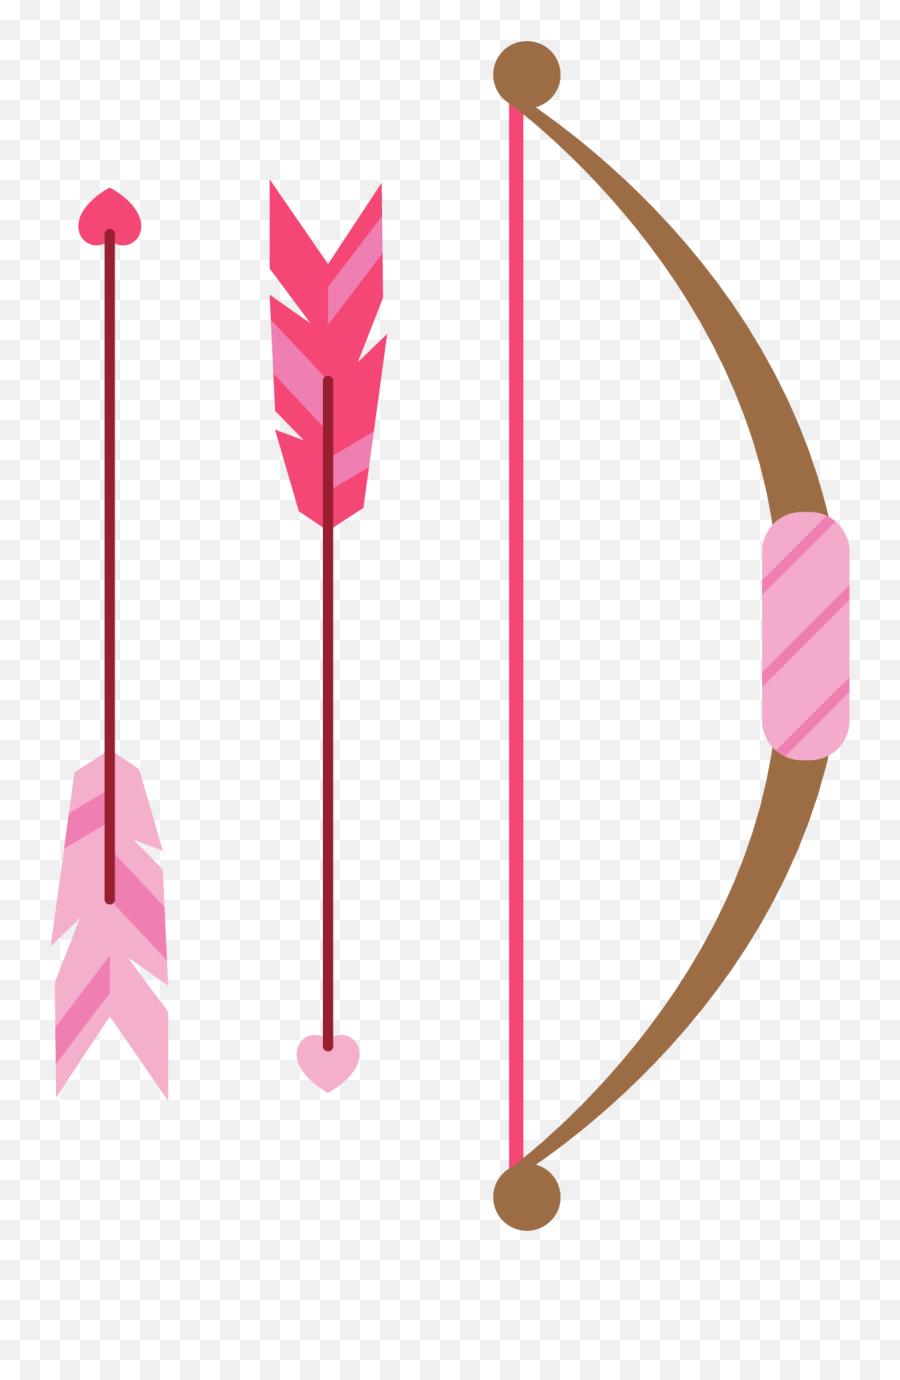 Arrow Feather Clip Art - Arrow Feather Clipart Png Pink Feather Arrow Png,Indian Arrow Png